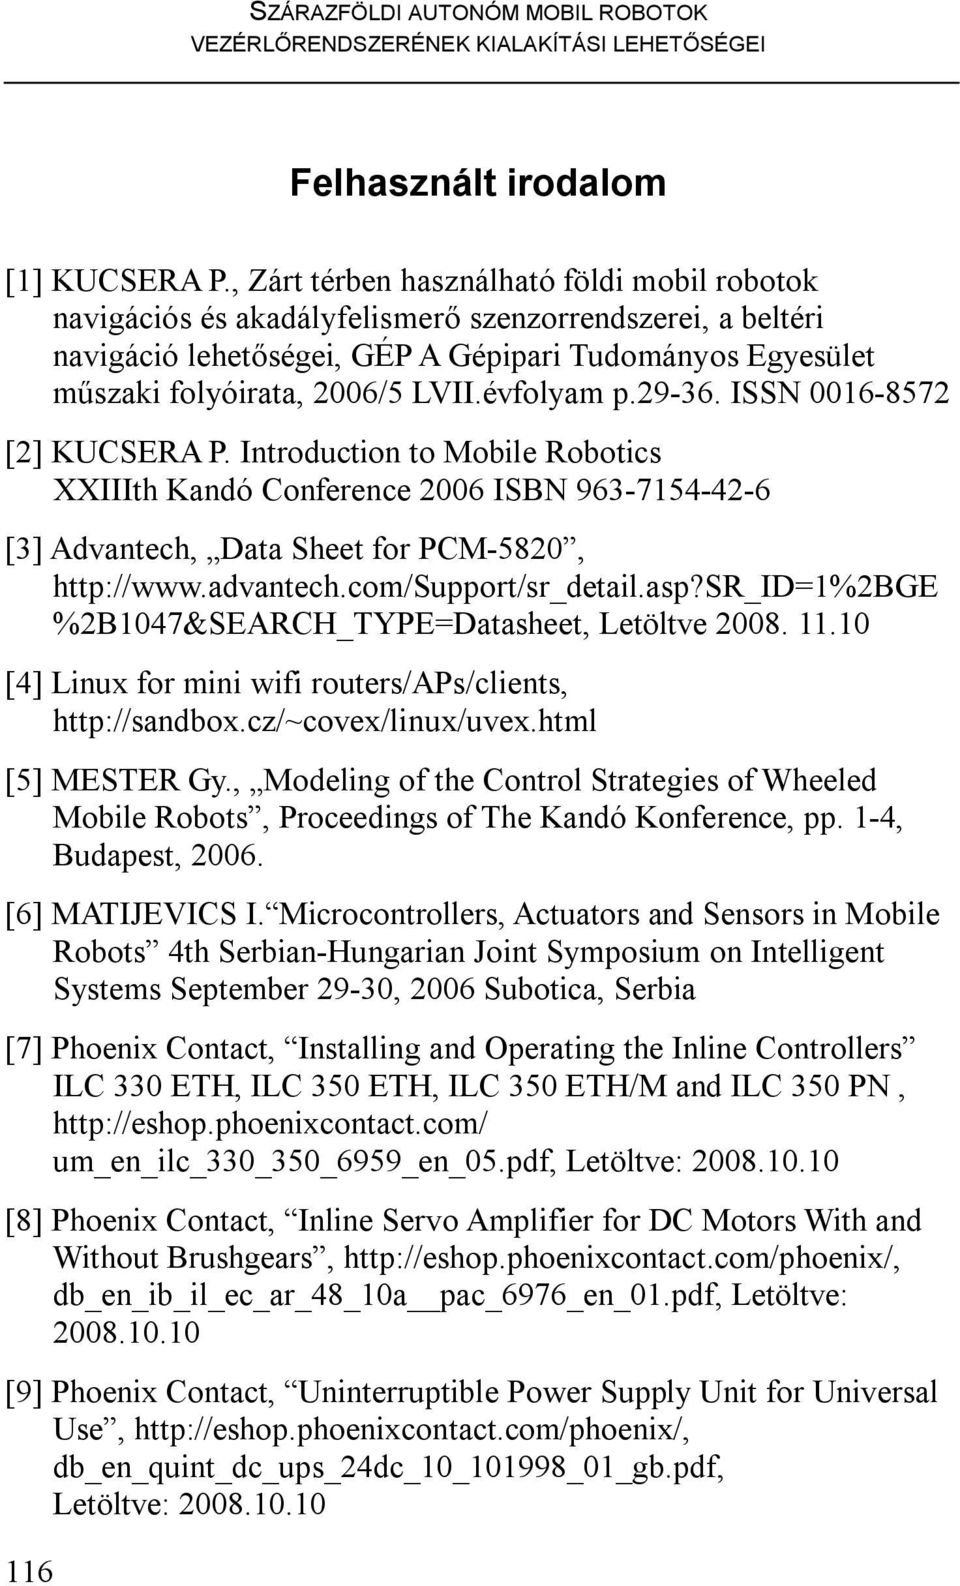 évfolyam p.29-36. ISSN 0016-8572 [2] KUCSERA P. Introduction to Mobile Robotics XXIIIth Kandó Conference 2006 ISBN 963-7154-42-6 [3] Advantech, Data Sheet for PCM-5820, http://www.advantech.